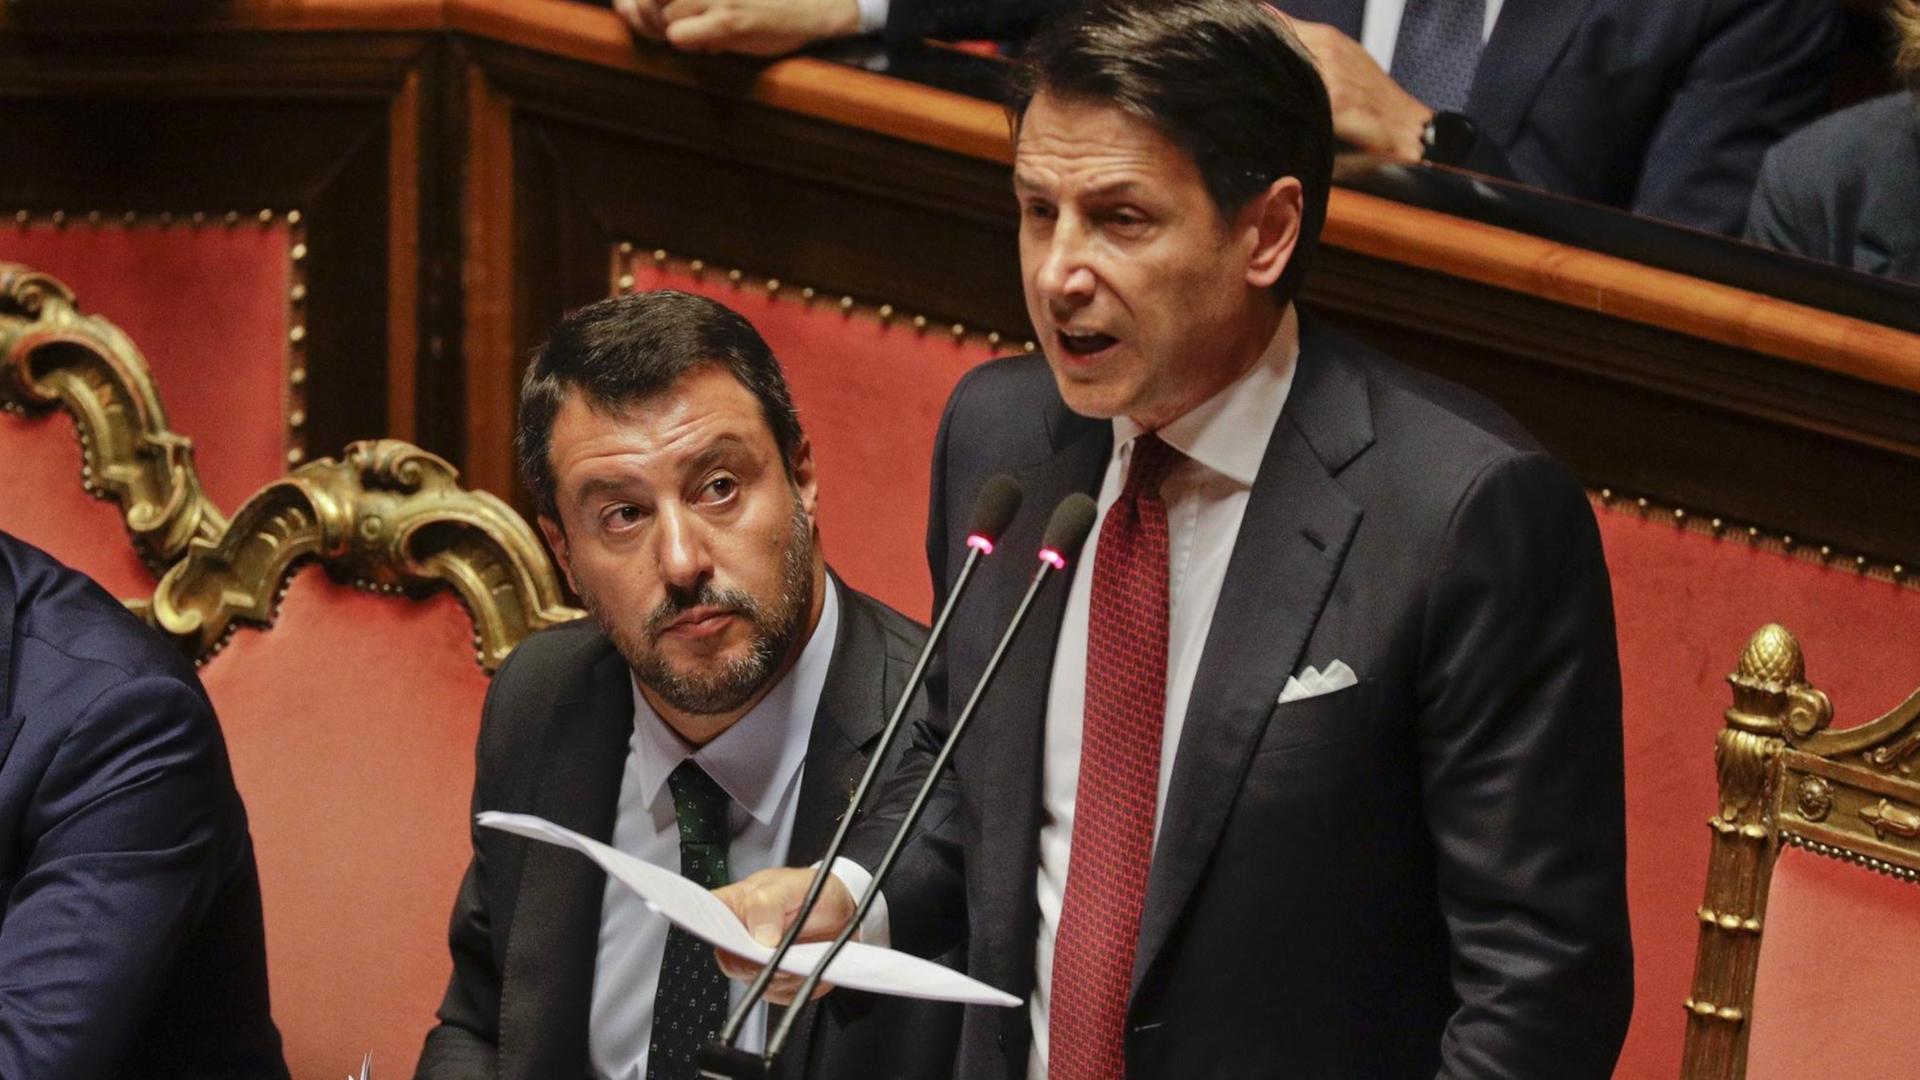 Giuseppe Conte hat im Senat gesagt: Ich höre auf. Neben ihm sitzt Matteo Salvini.